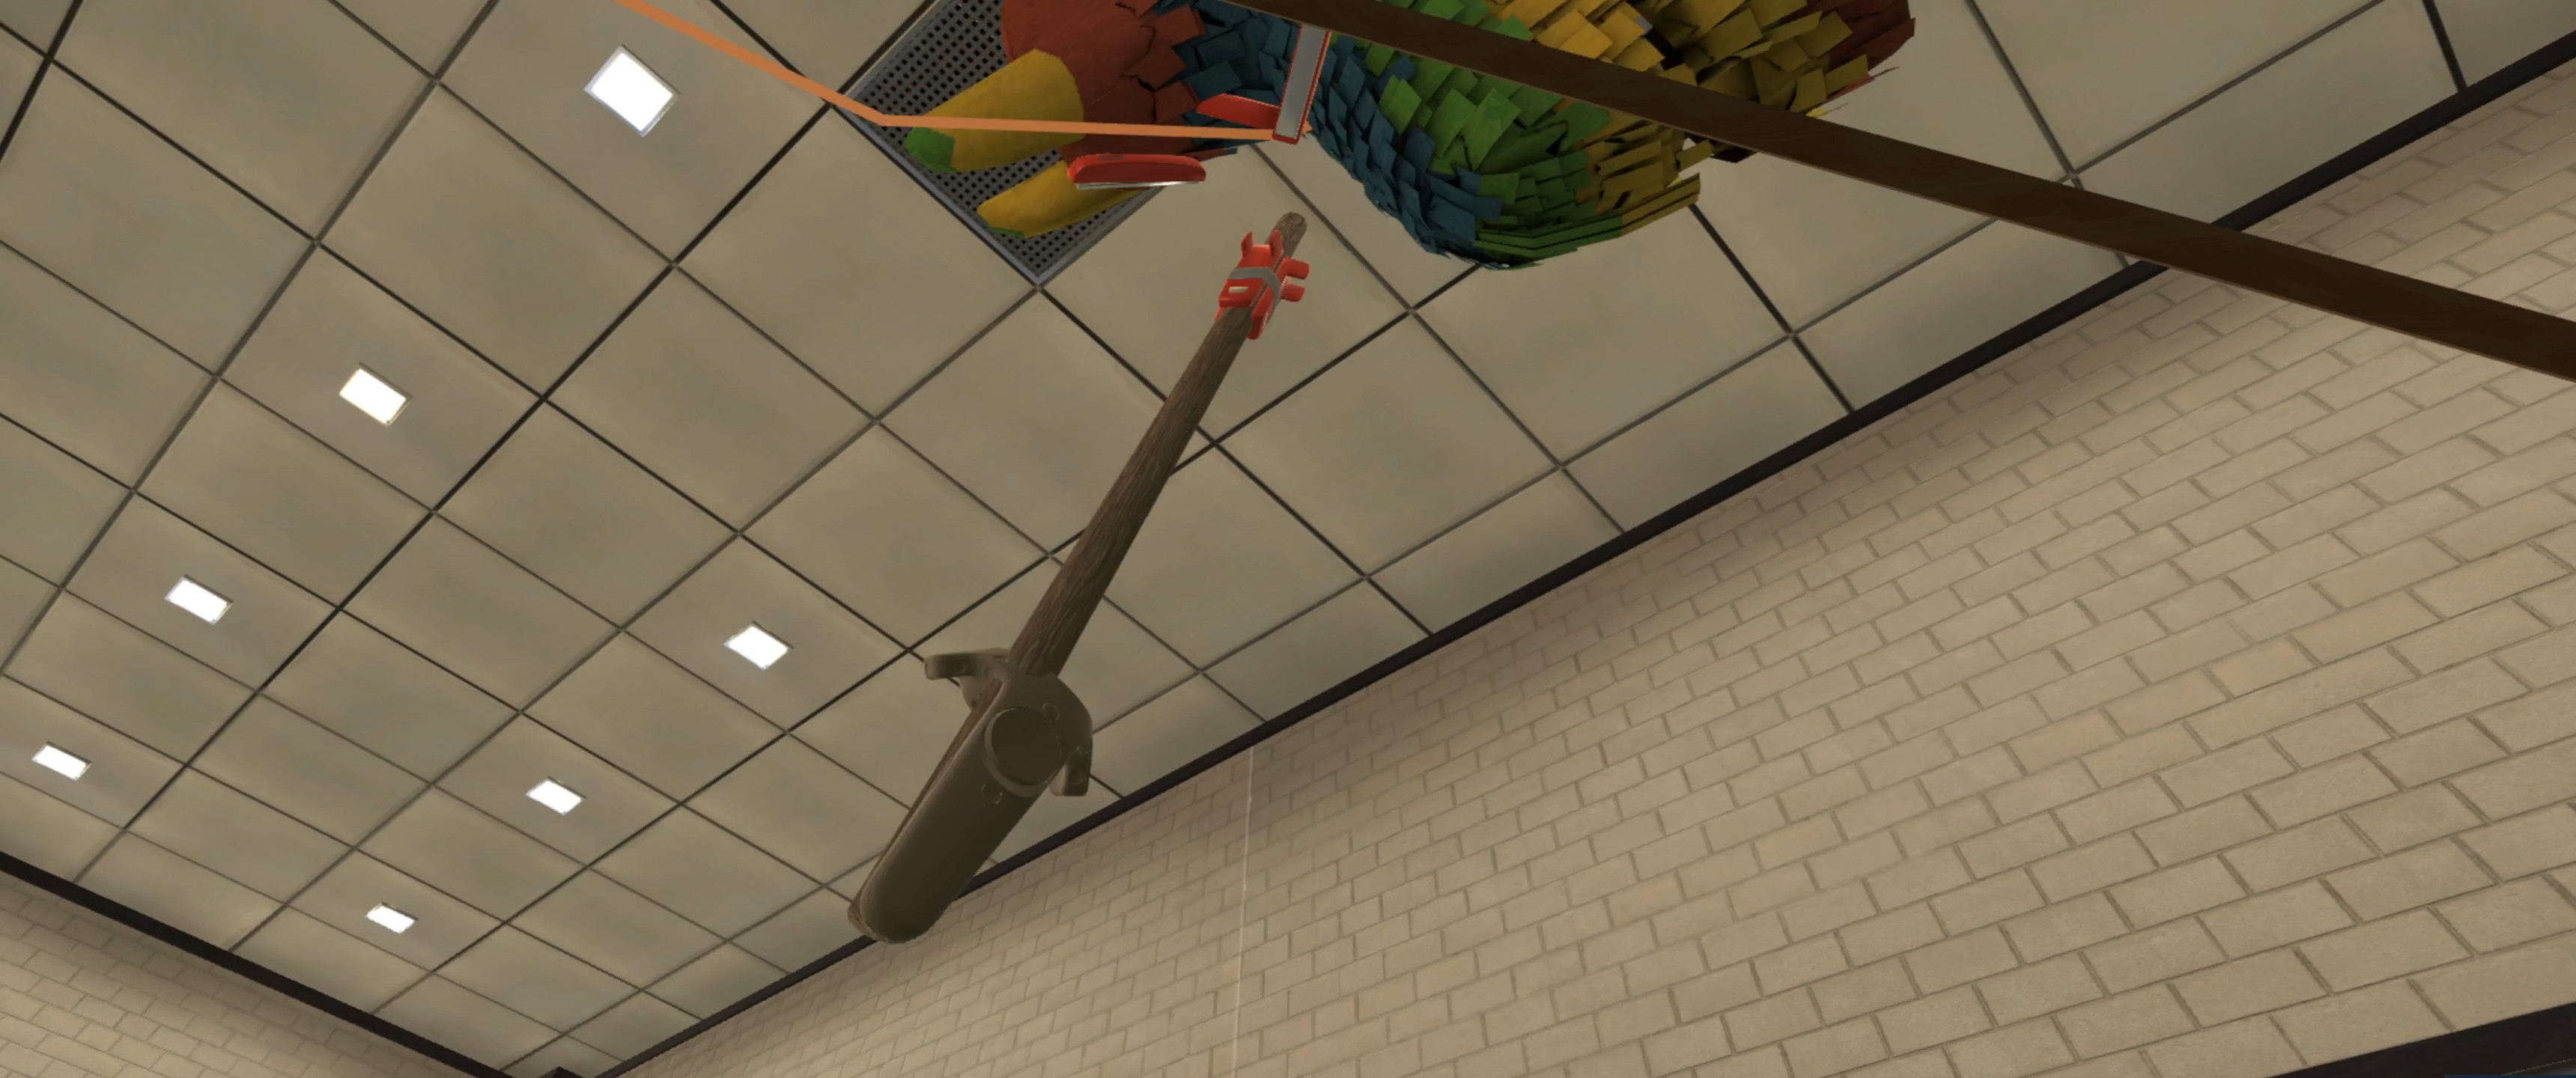 Piñata Attack screenshot